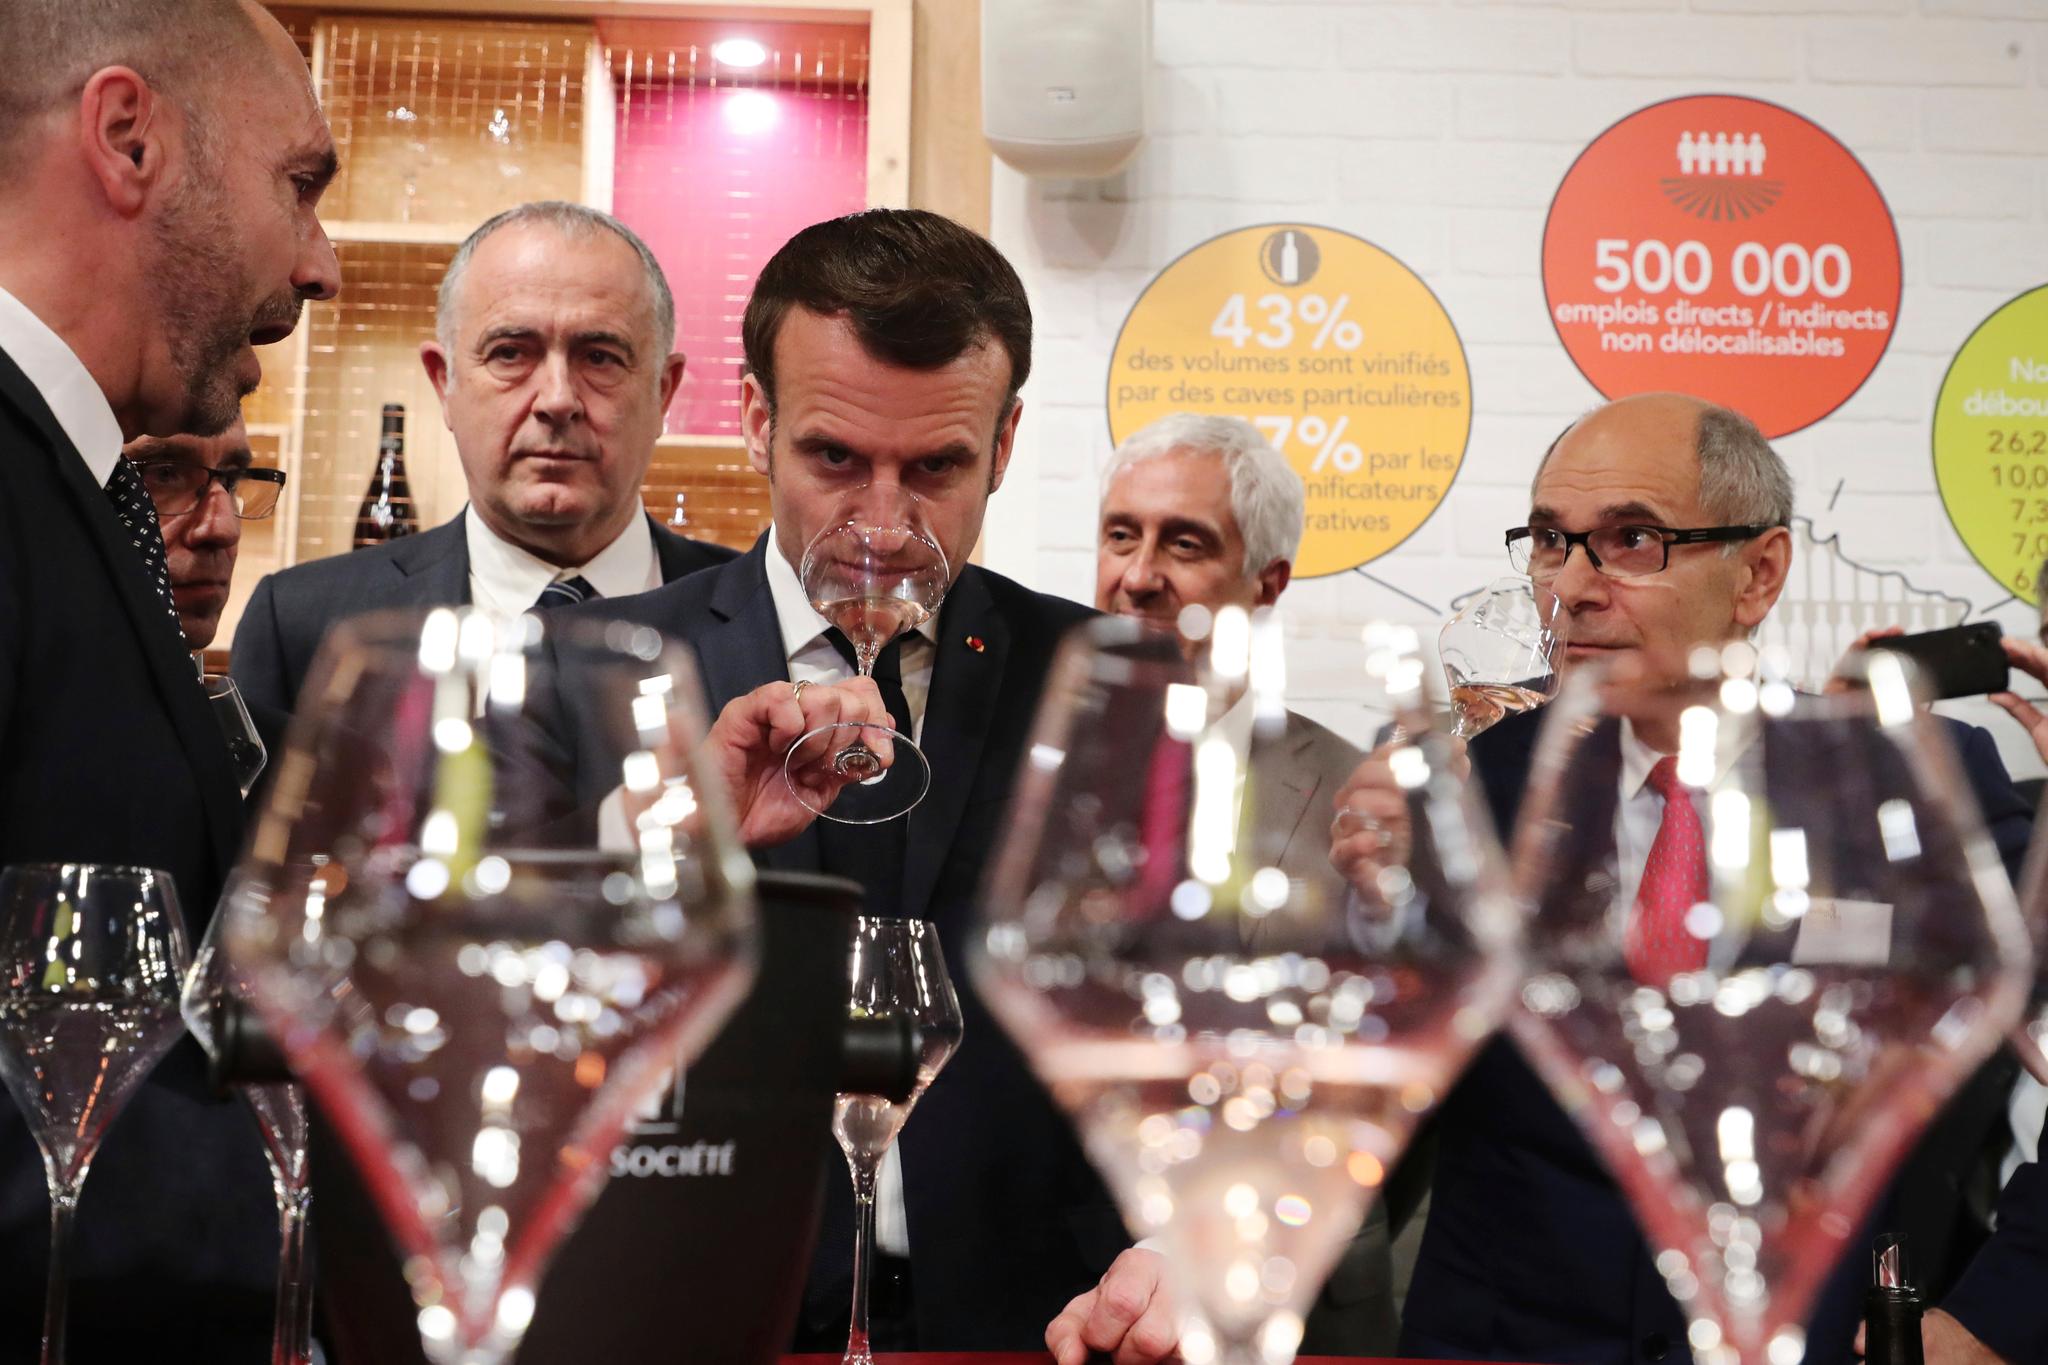 President Emmanuel Macron nyter et glass vin på den store landbruksmessen i Paris. Men ikke alle synes han fortjener såpass.